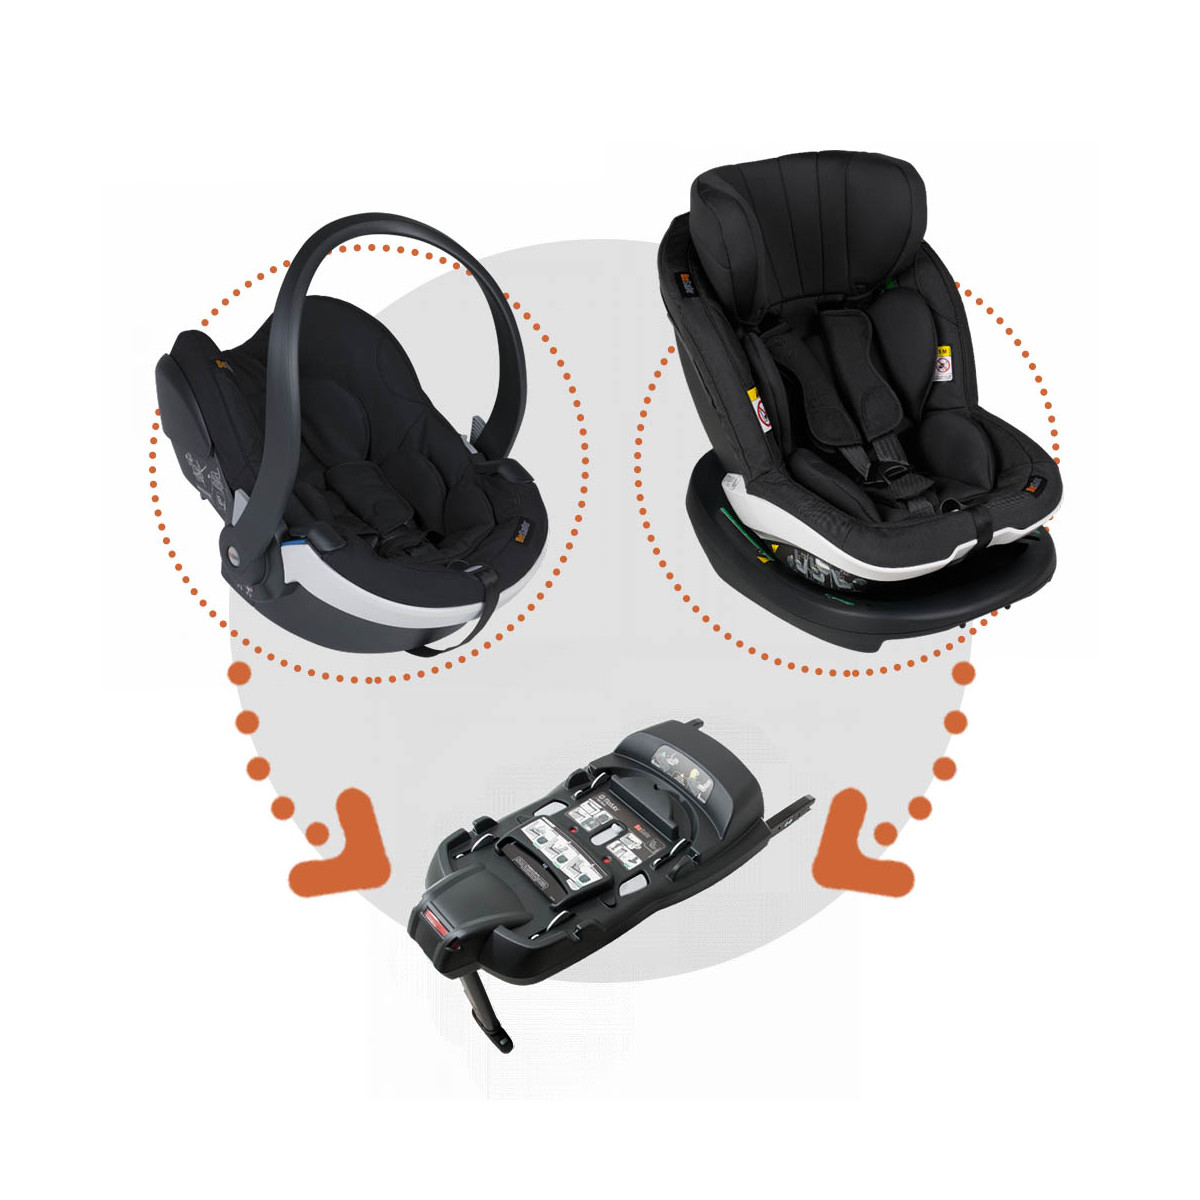 Carritos de Bebé 3 Piezas: Elegir sin renunciar a la seguridad en el coche